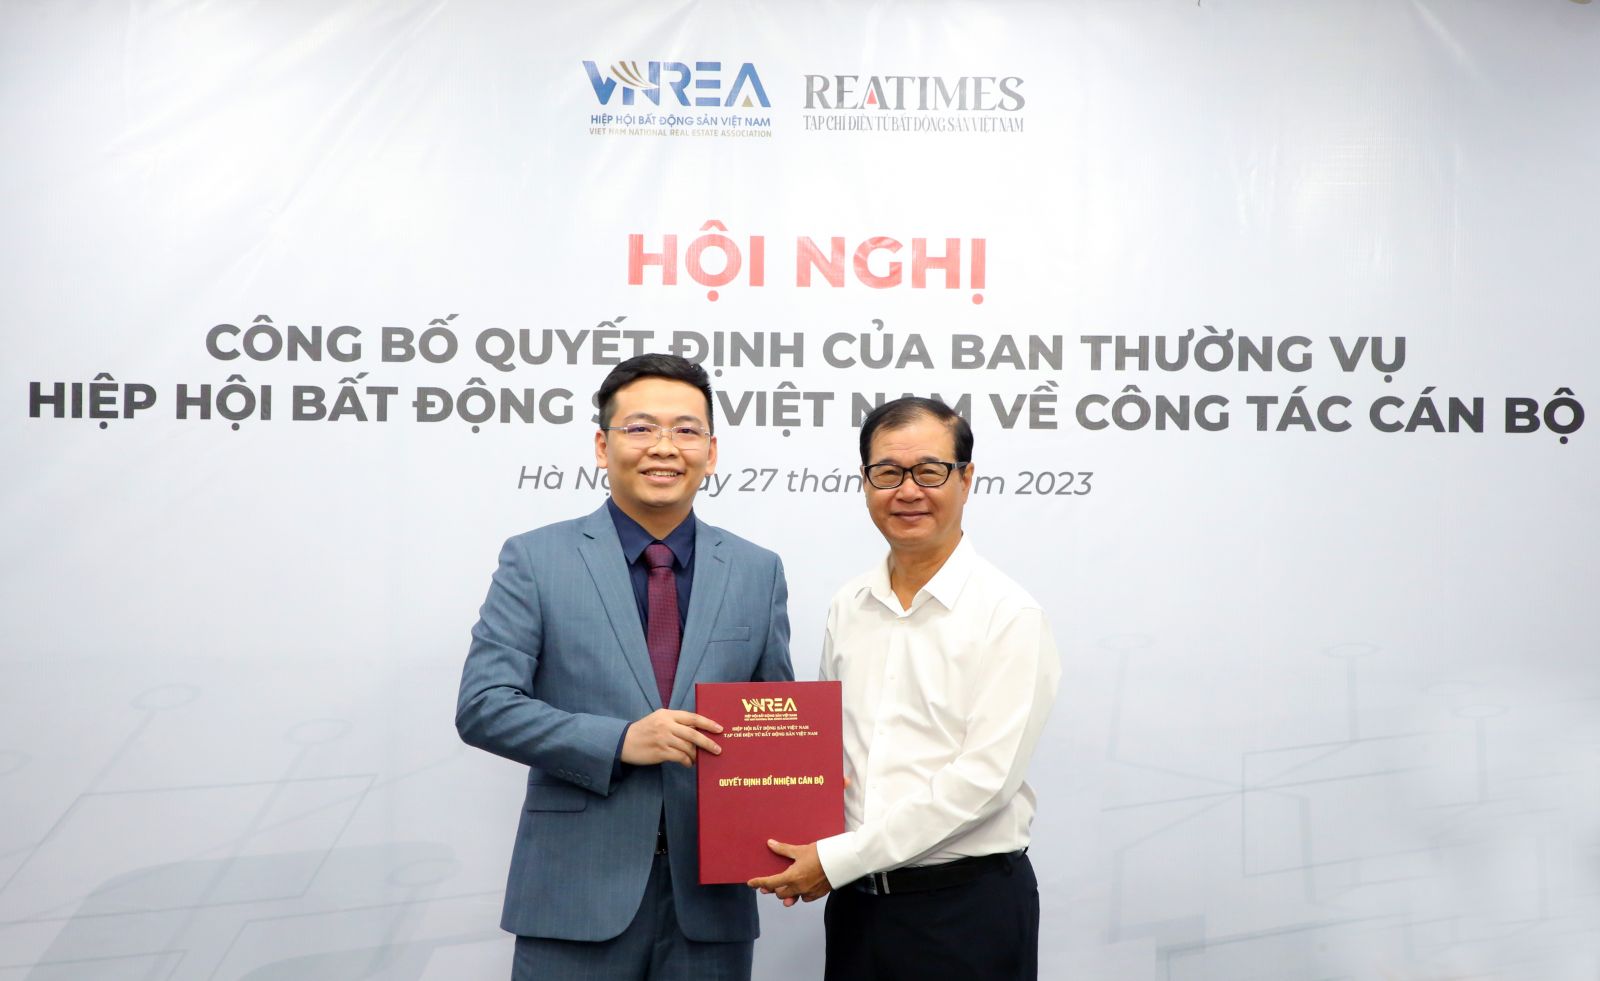 Ông Nguyễn Mạnh Hà, Phó Chủ tịch thường trực VNREA, nguyên Cục trưởng Cục Quản lý nhà và thị trường bất động sản, Bộ Xây dựng trao Quyết định của BTV cho nhà báo Nguyễn Thành Công.